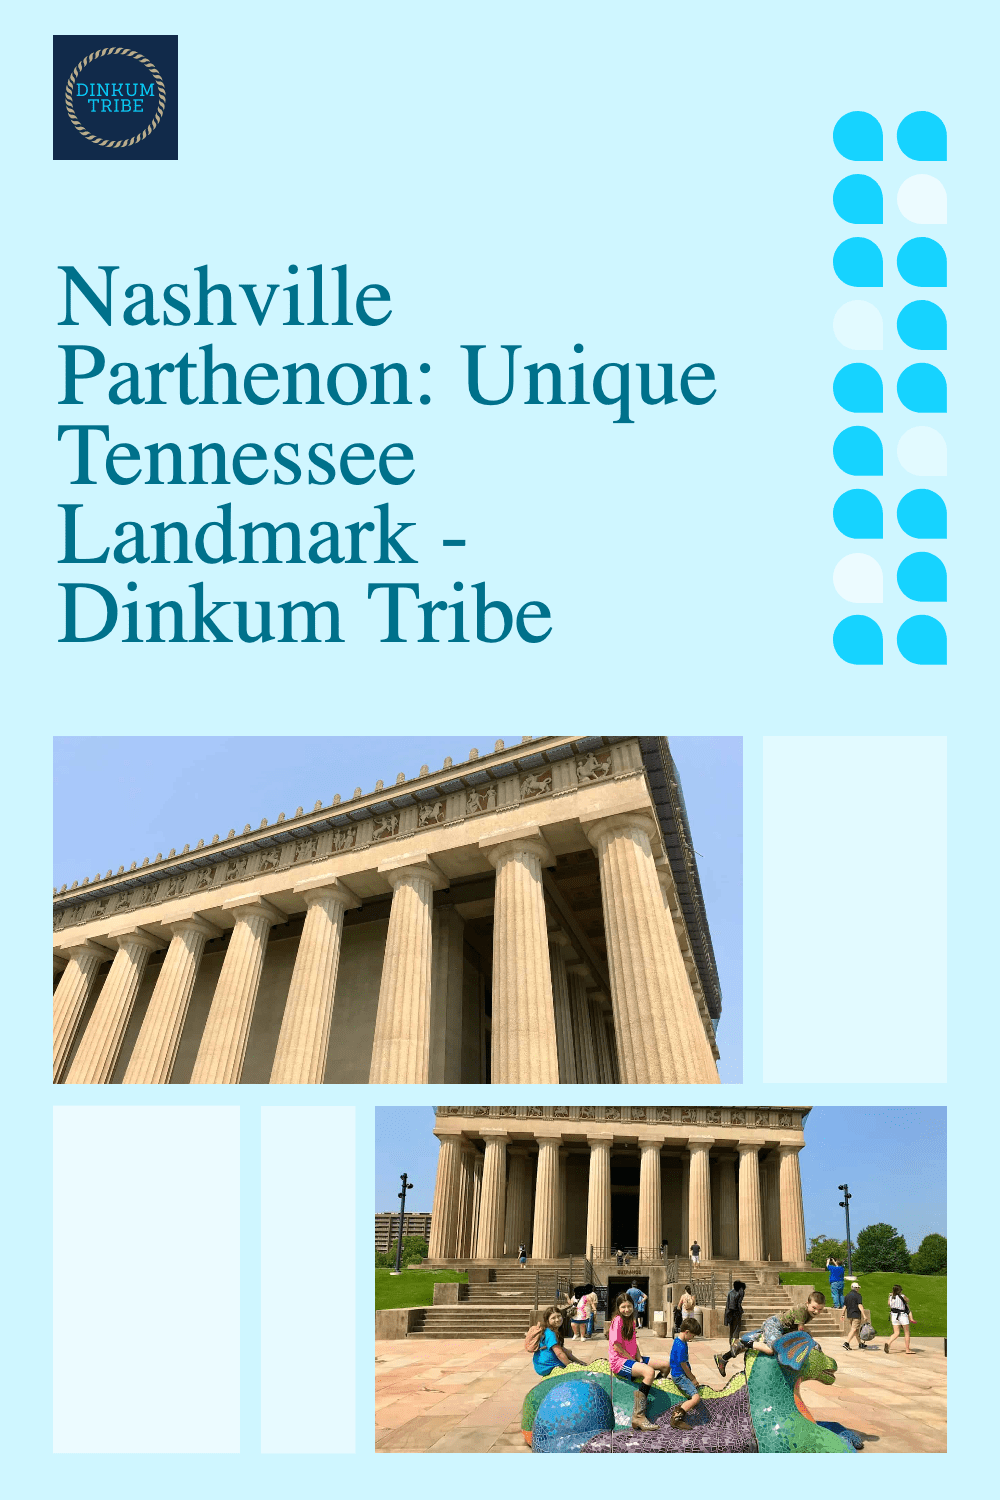 Nashville Parthenon collage